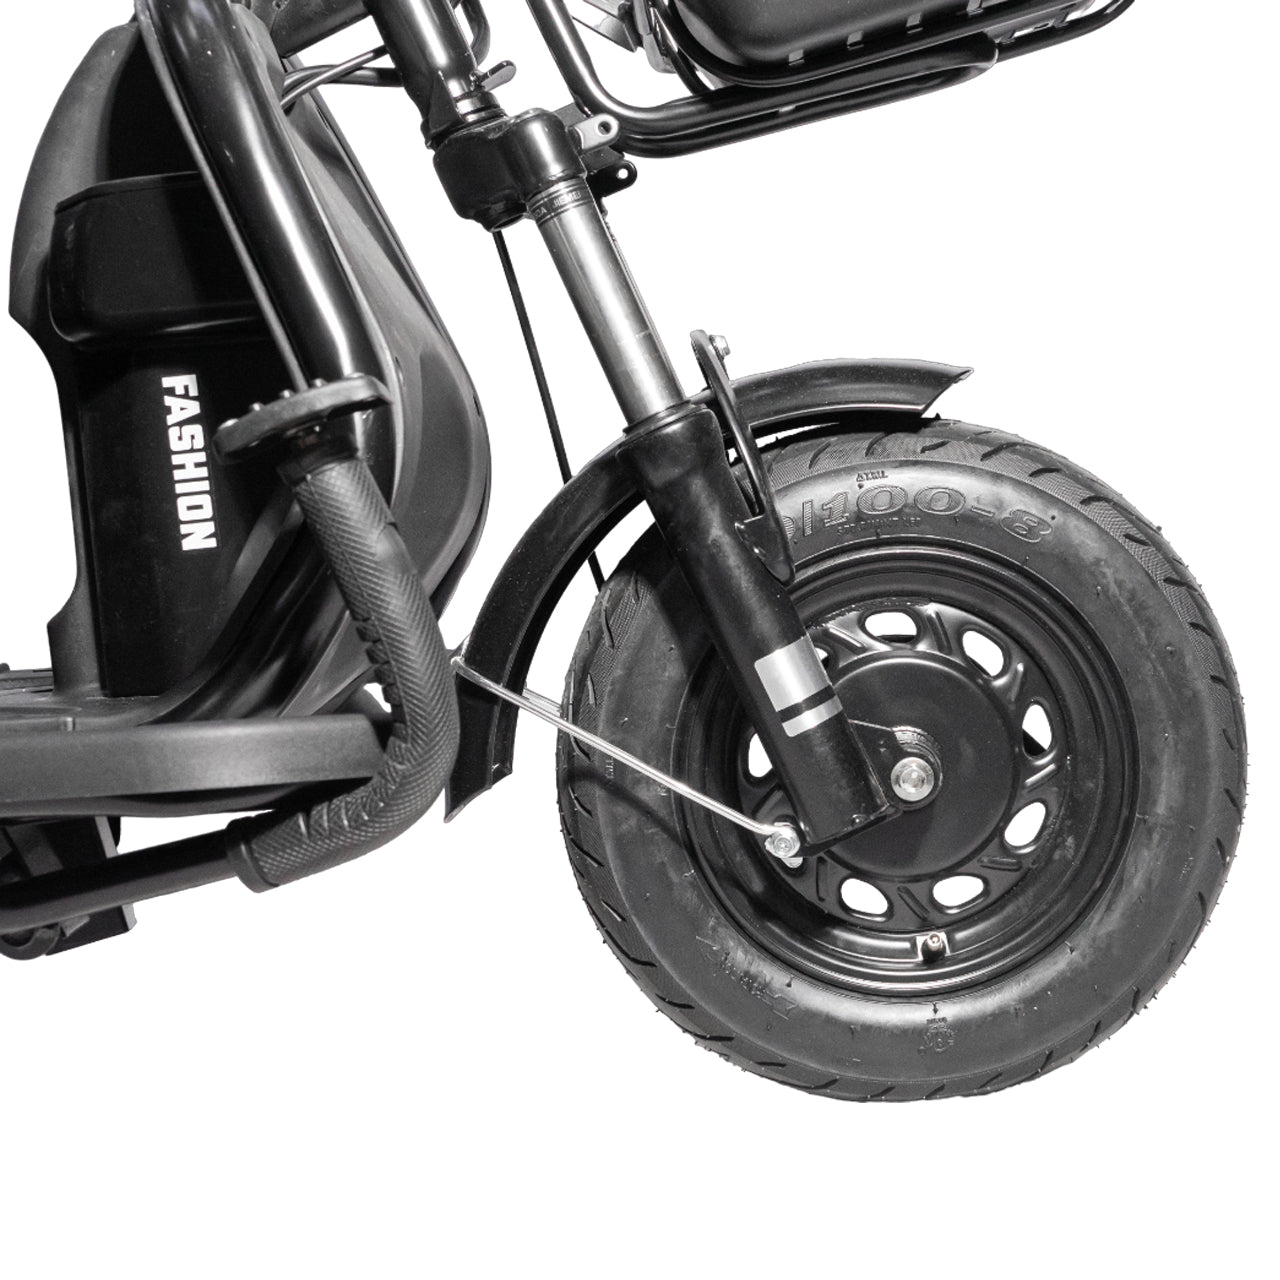 CRONY X3A X3B motorcycle electric bike 350W 48V electric motorcycle Electric Bicycles 3 wheel motorcycle